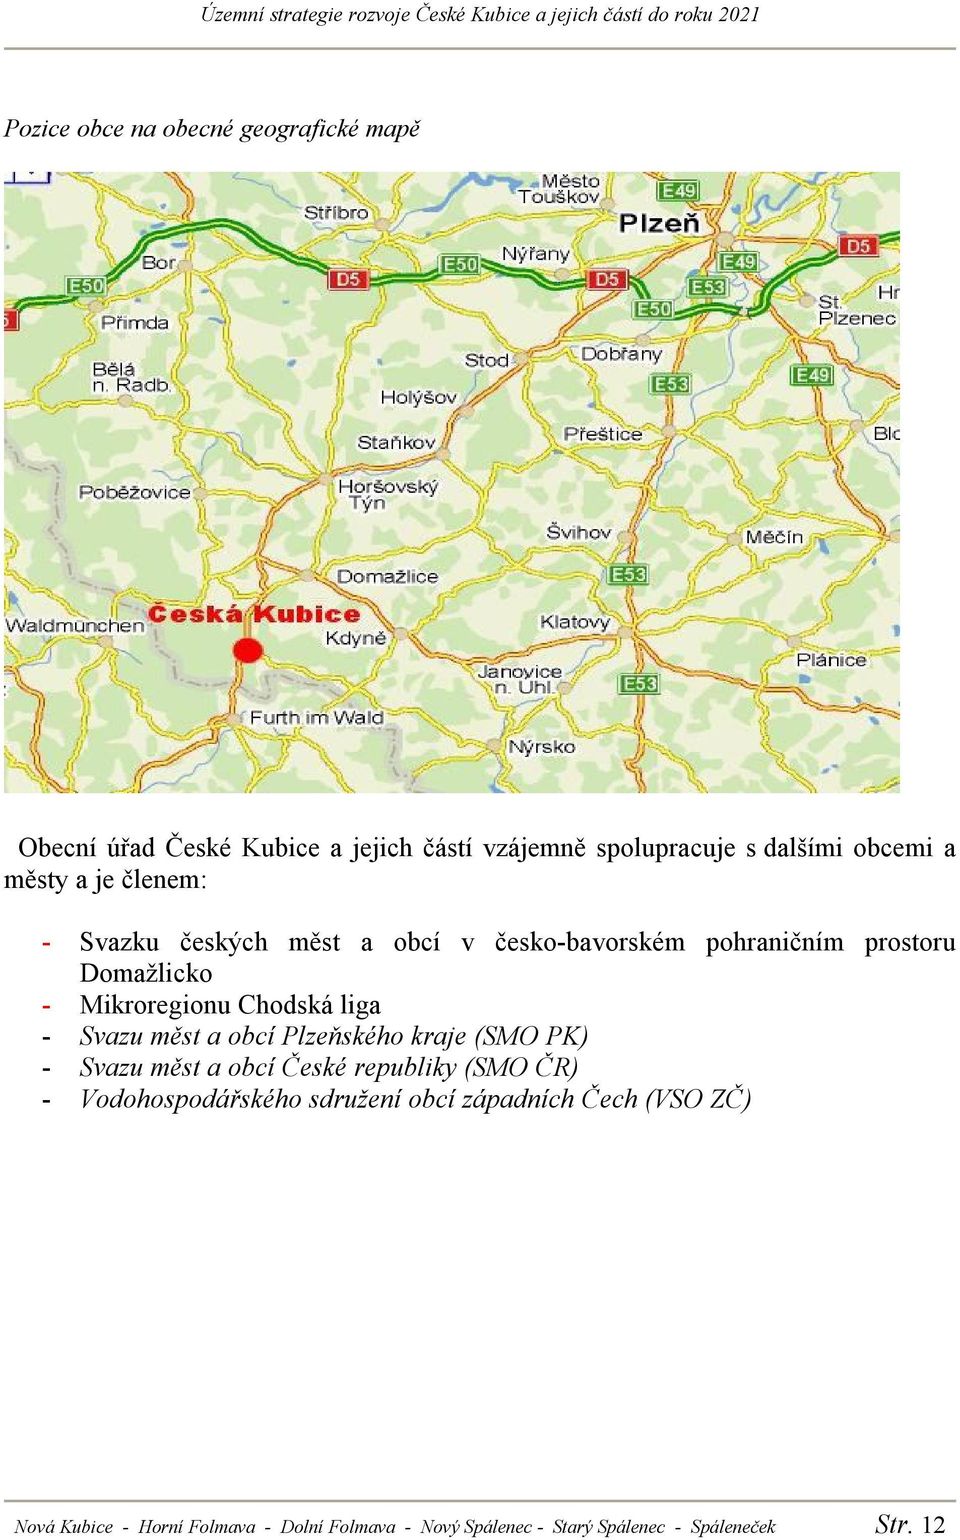 liga - Svazu měst a obcí Plzeňského kraje (SMO PK) - Svazu měst a obcí České republiky (SMO ČR) - Vodohospodářského